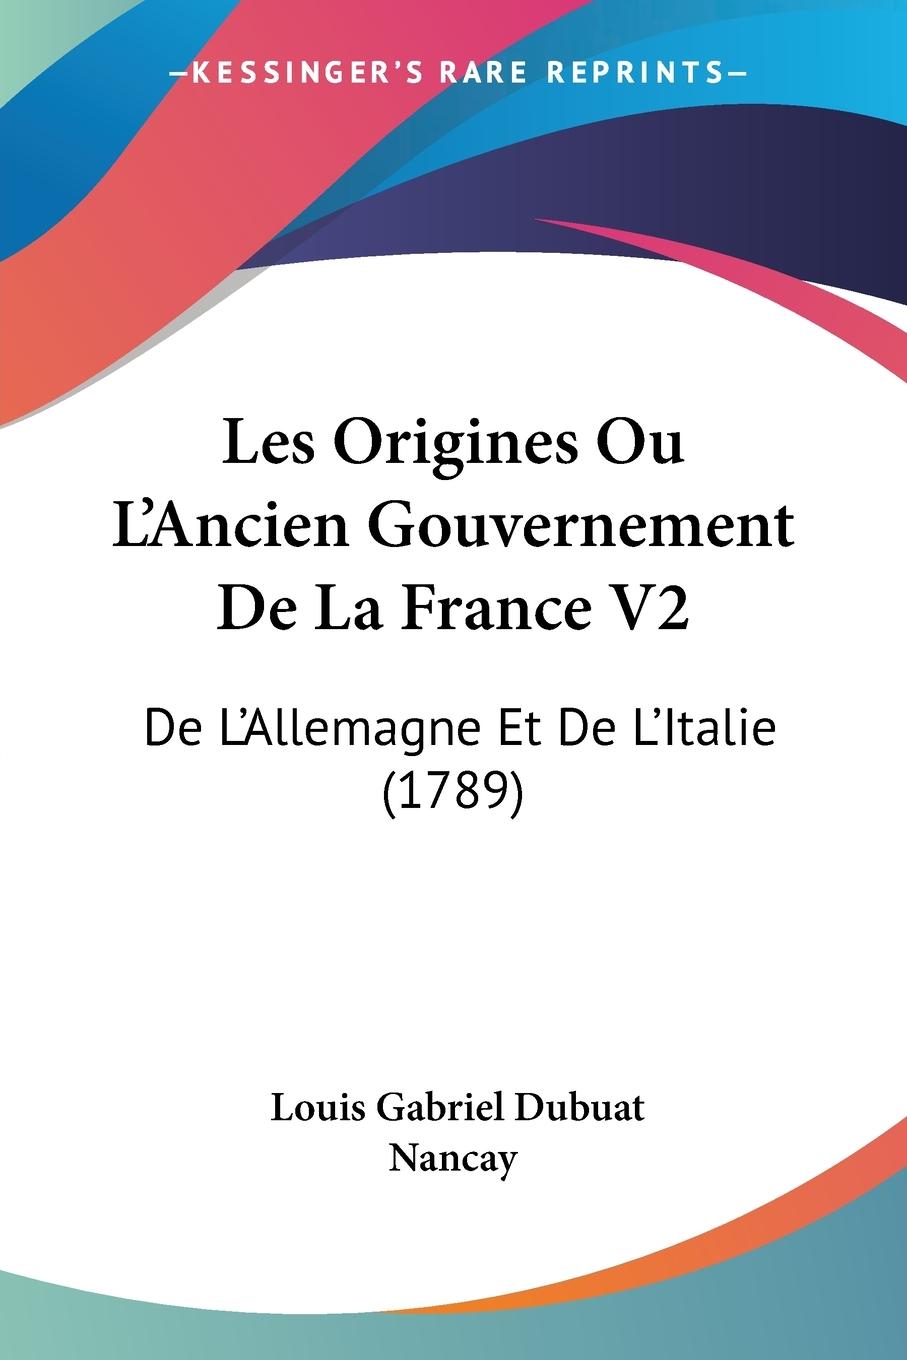 Les Origines Ou L Ancien Gouvernement De La France V2 - Nancay, Louis Gabriel Dubuat